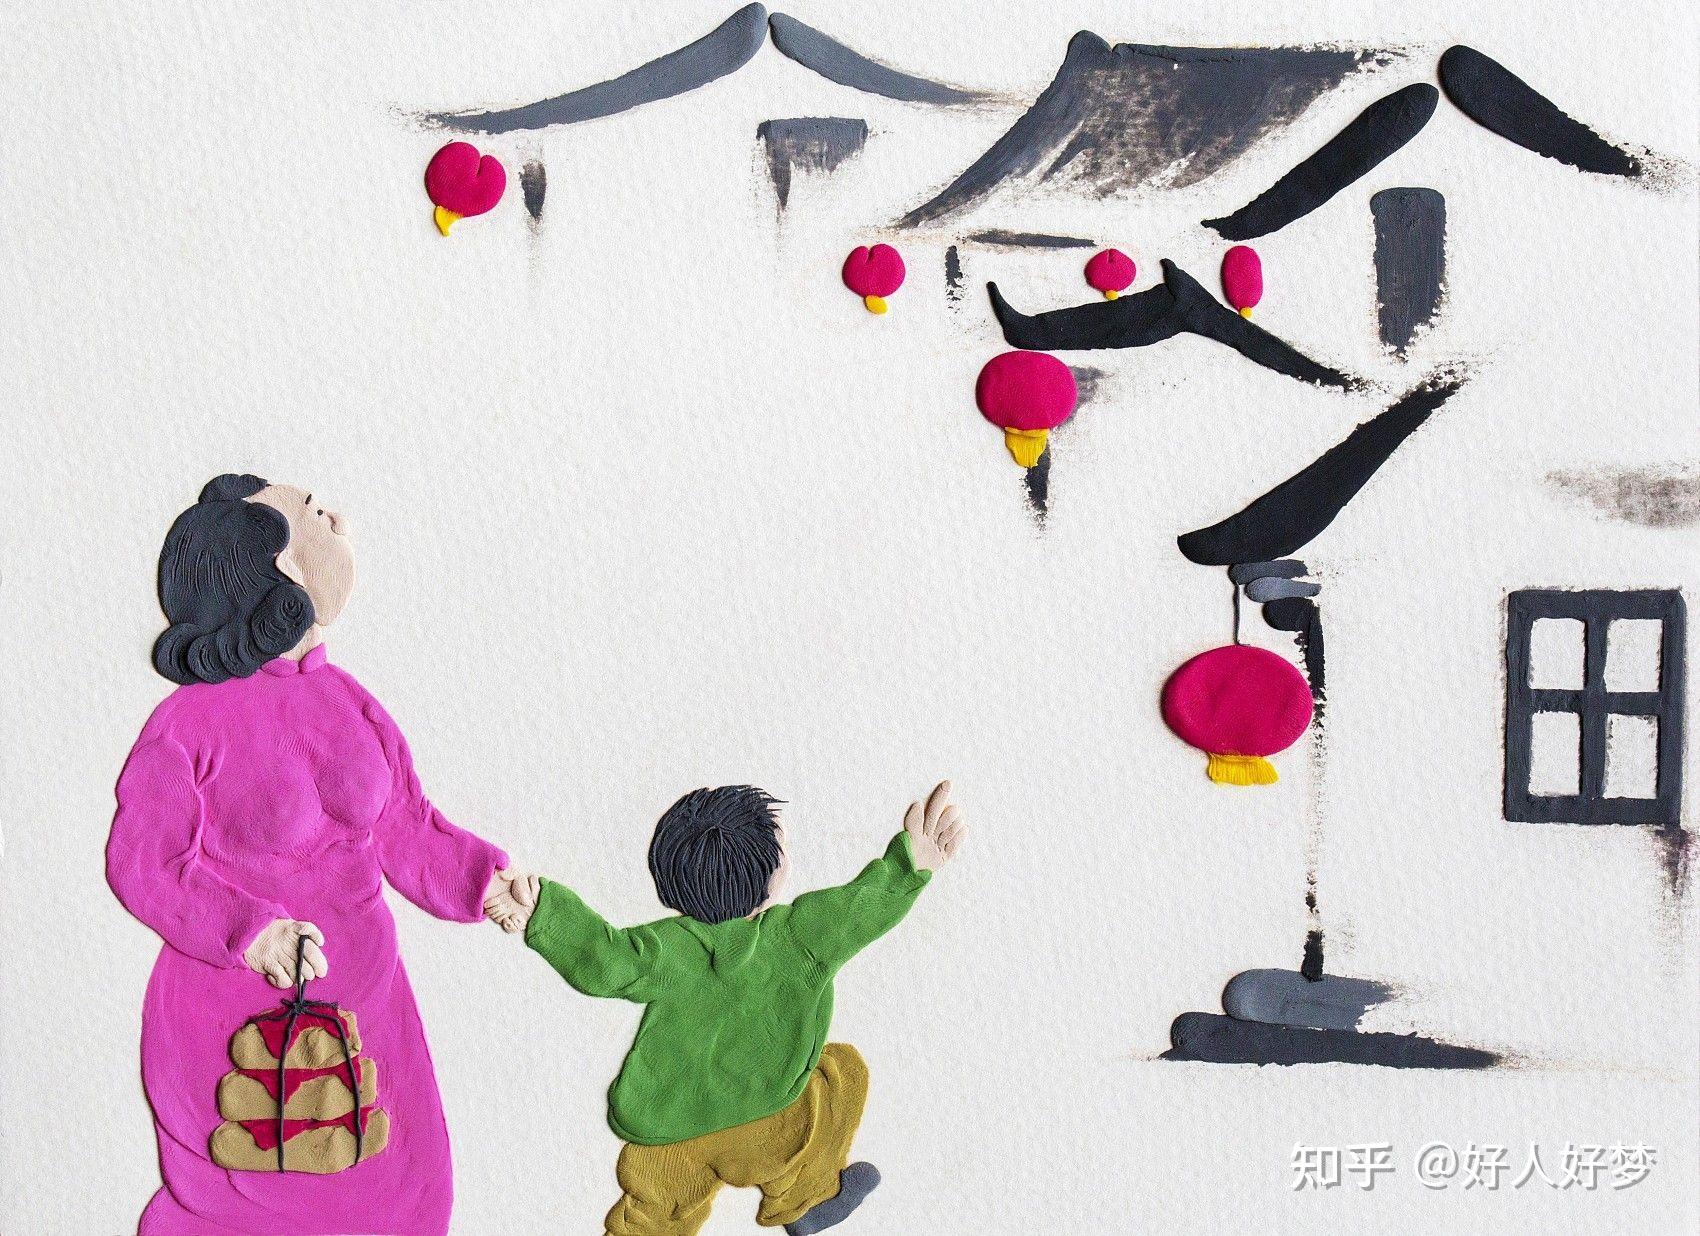 开心一刻 - 多彩的一天 - 杭州市德胜幼儿园